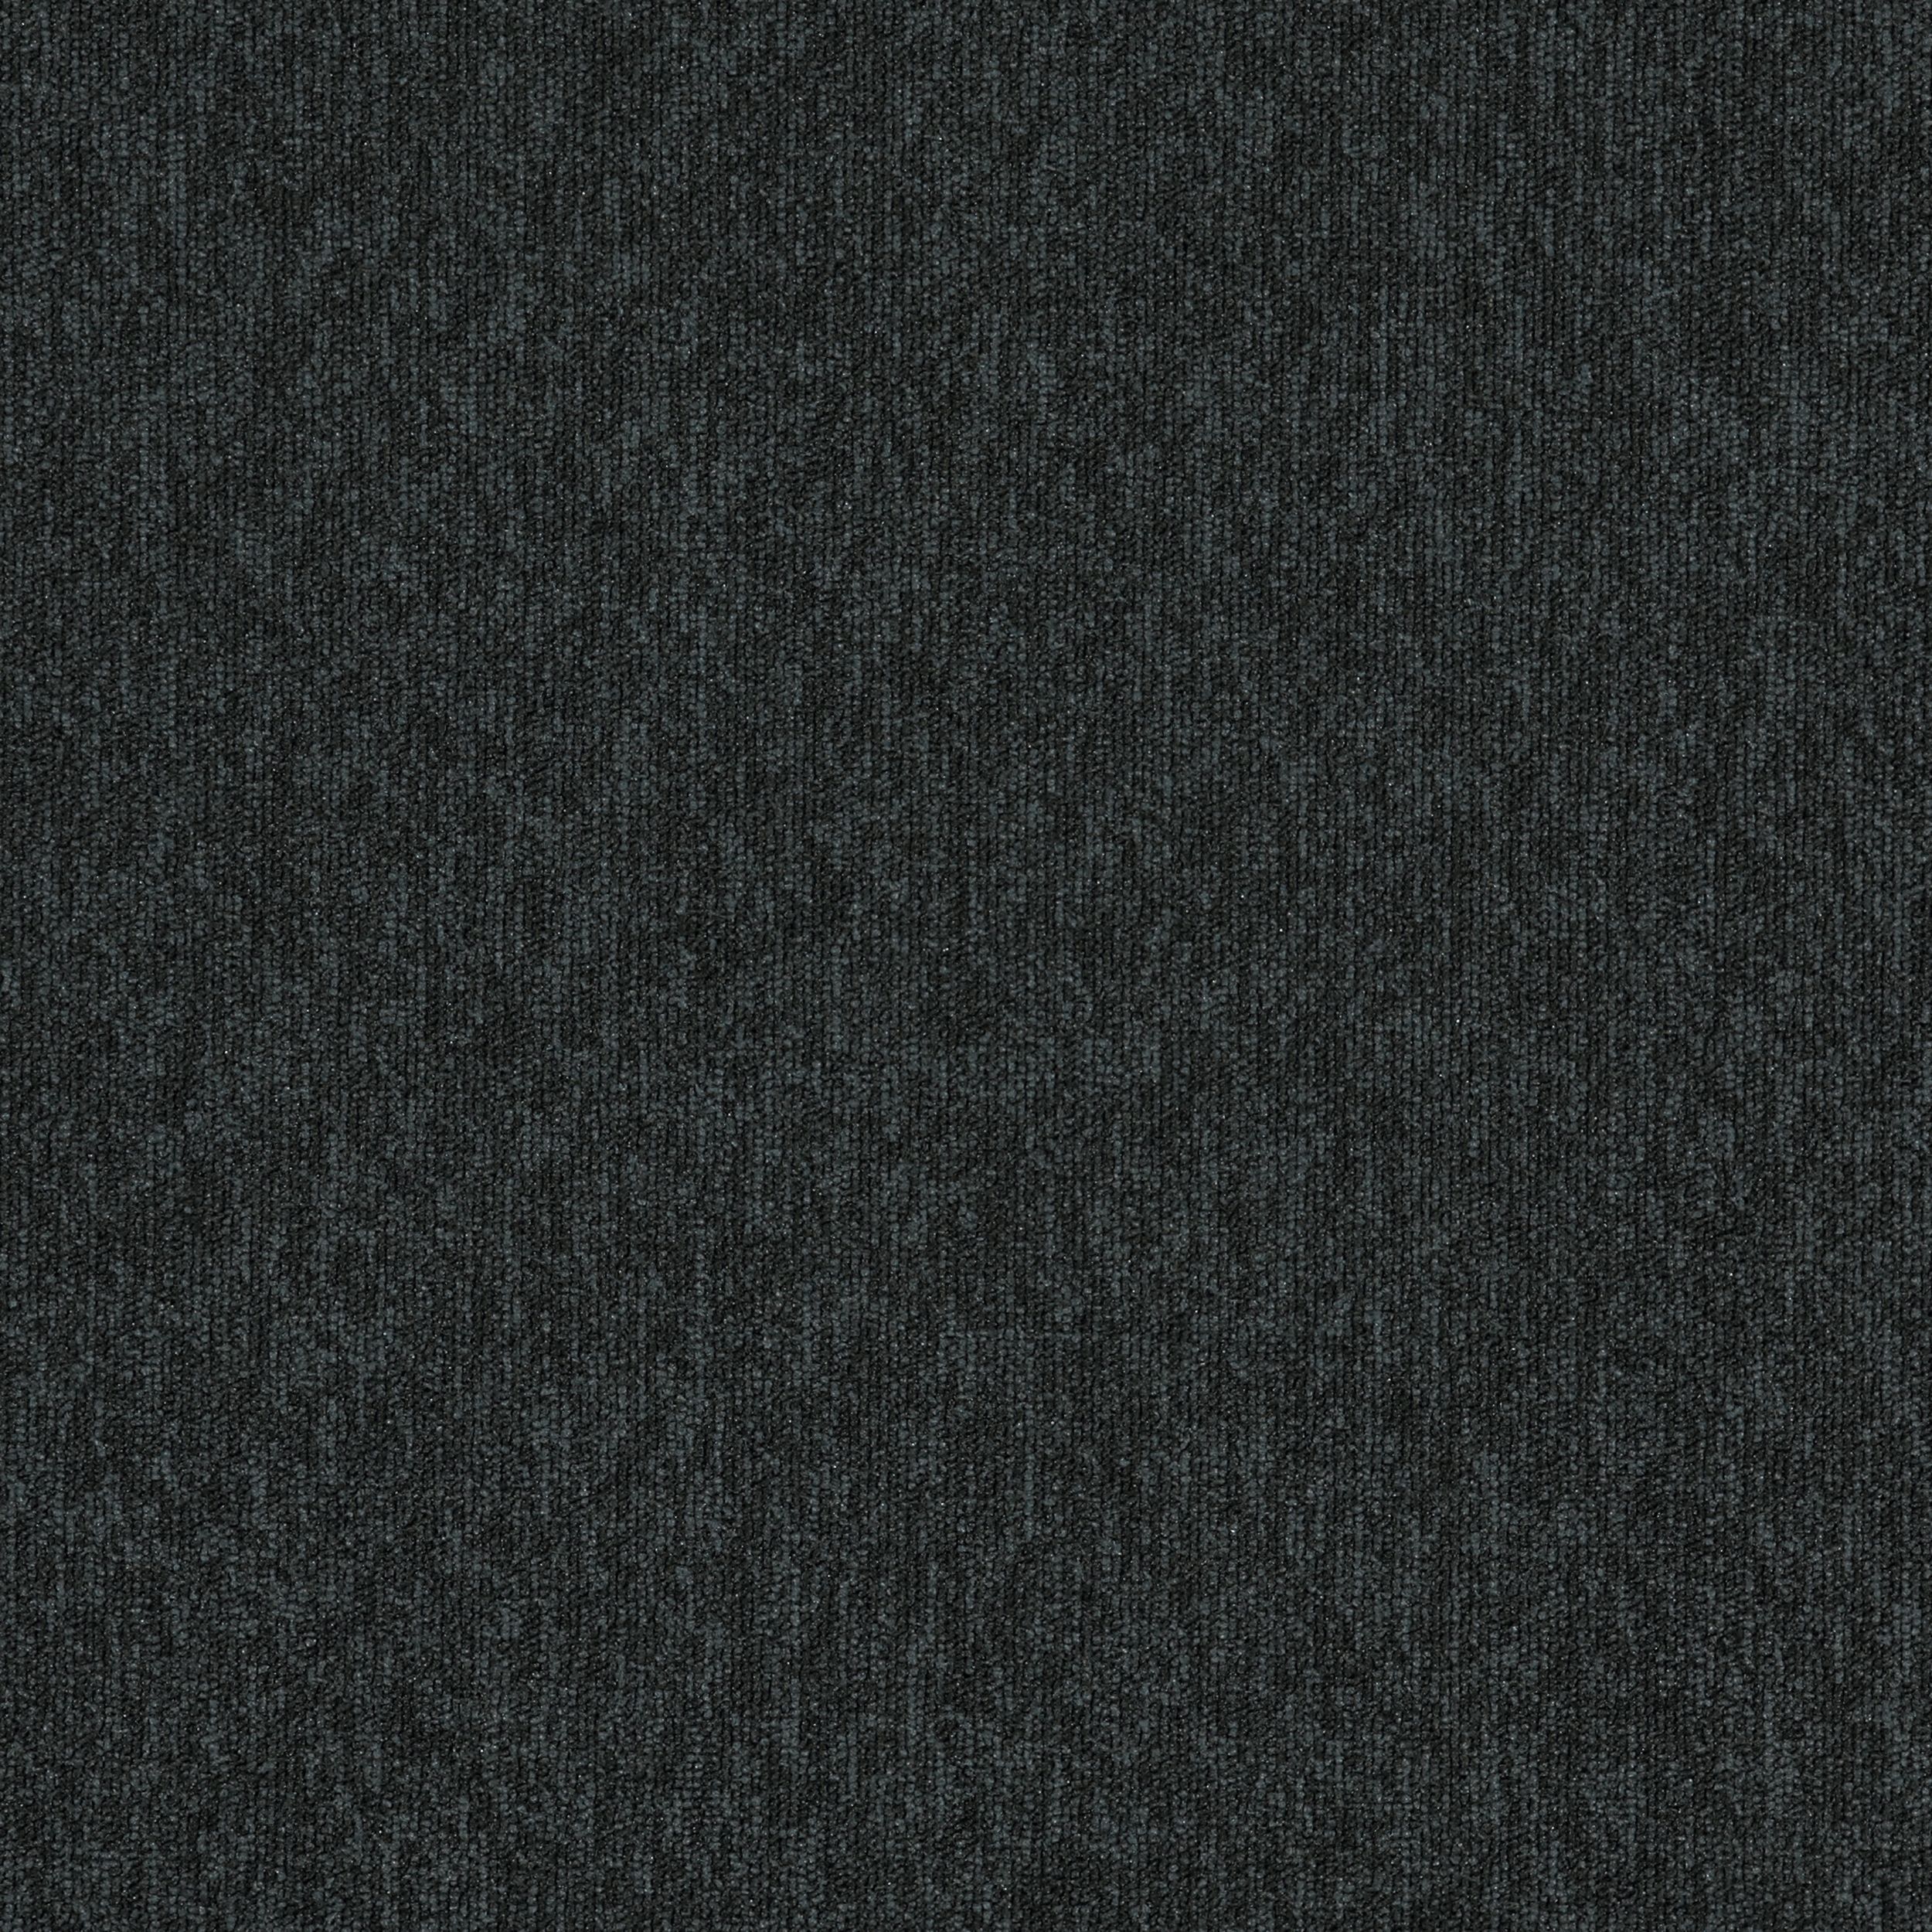 New Horizons II Carpet Tile In Carbon afbeeldingnummer 2